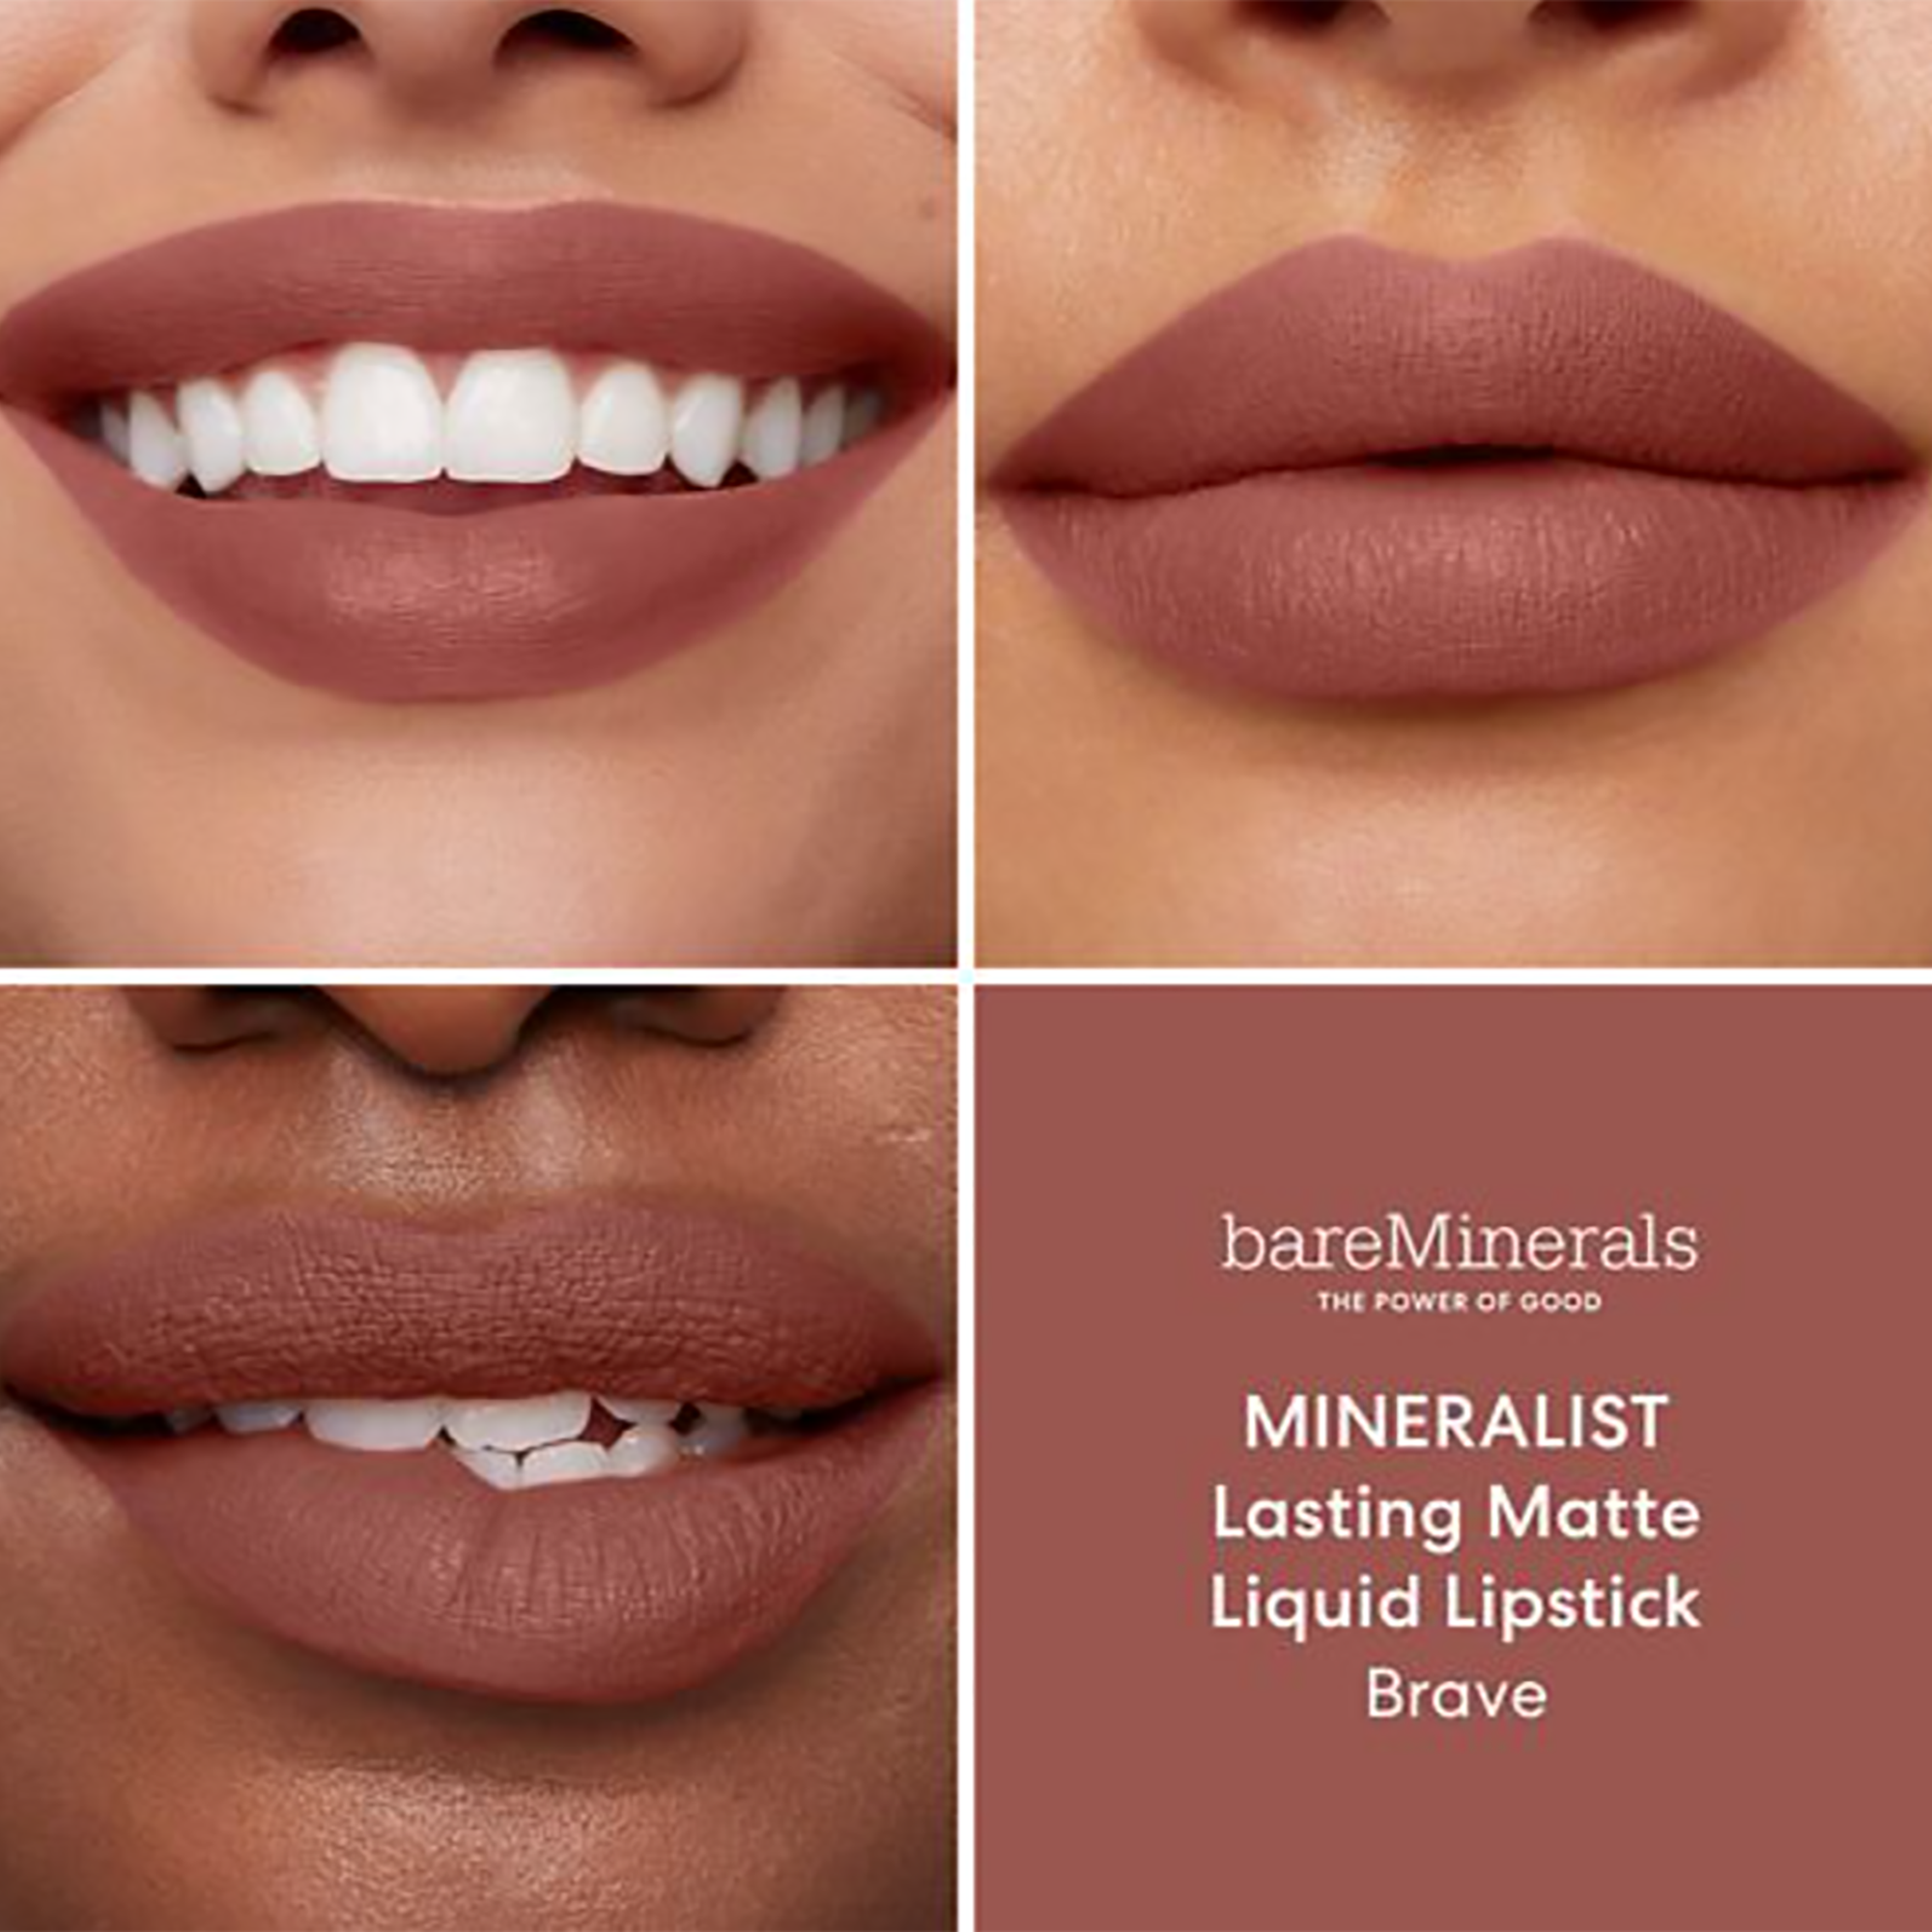 Bare Minerals Mineralist Lasting Matte Liquid Lipstick / BRAVE